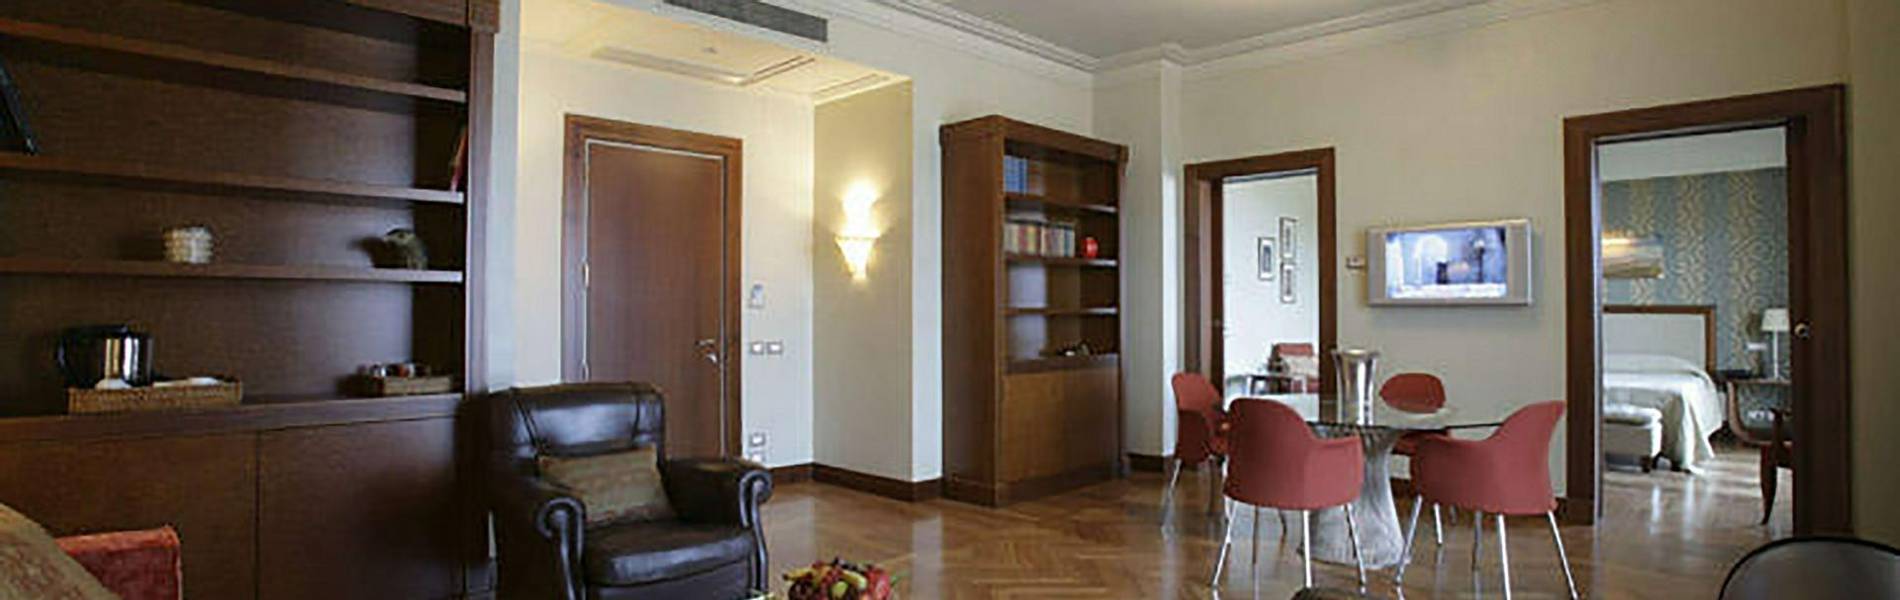 Villa Maria D'Abruzzo, Abruzzo, Italy,Master-Suite.jpg